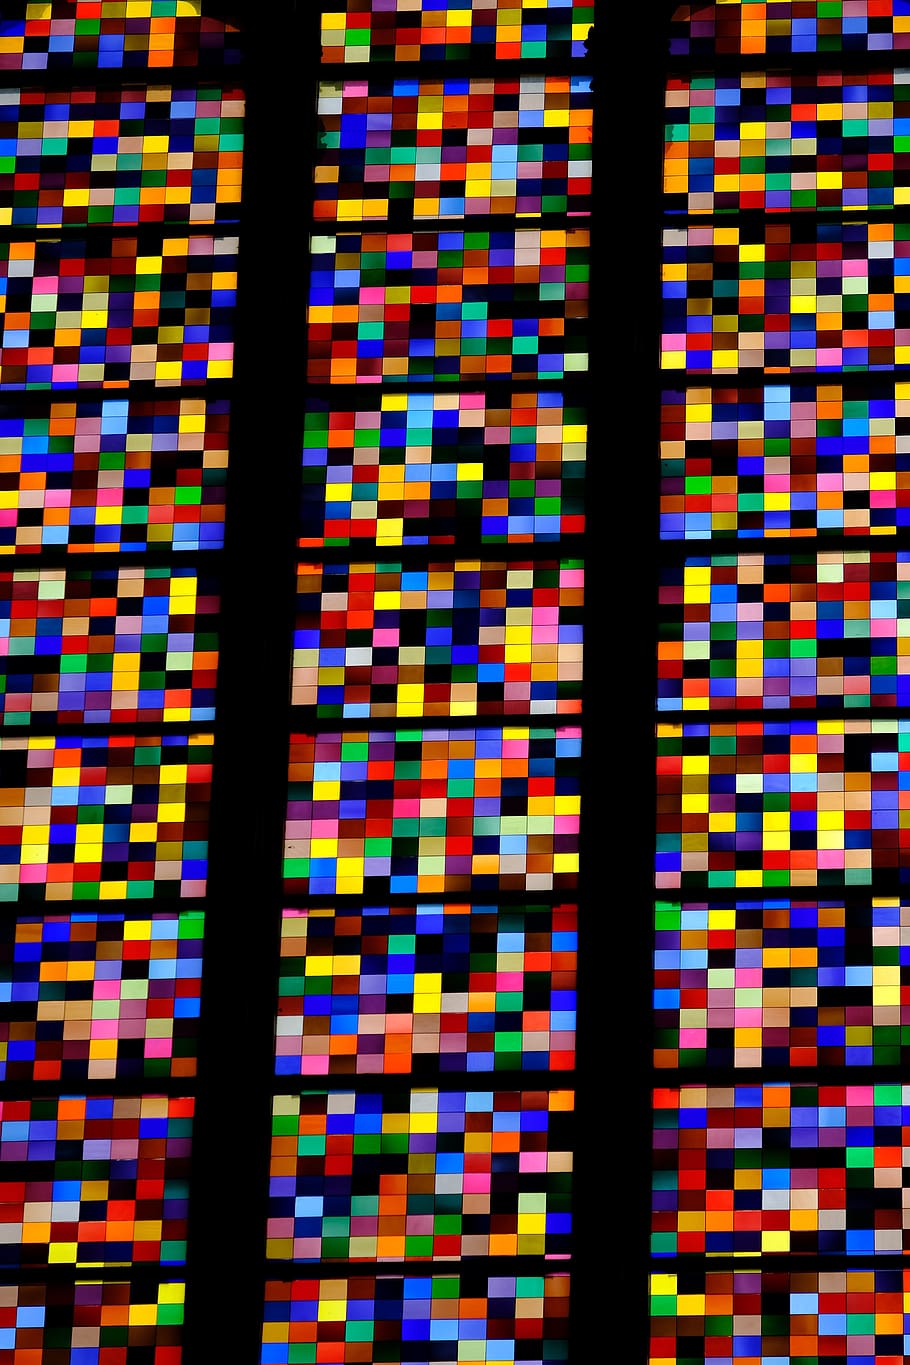 janela de igreja, colorido, vidro, catedral de colônia, multi colorido, planos de fundo, padrão, quadro completo, sem pessoas, interior